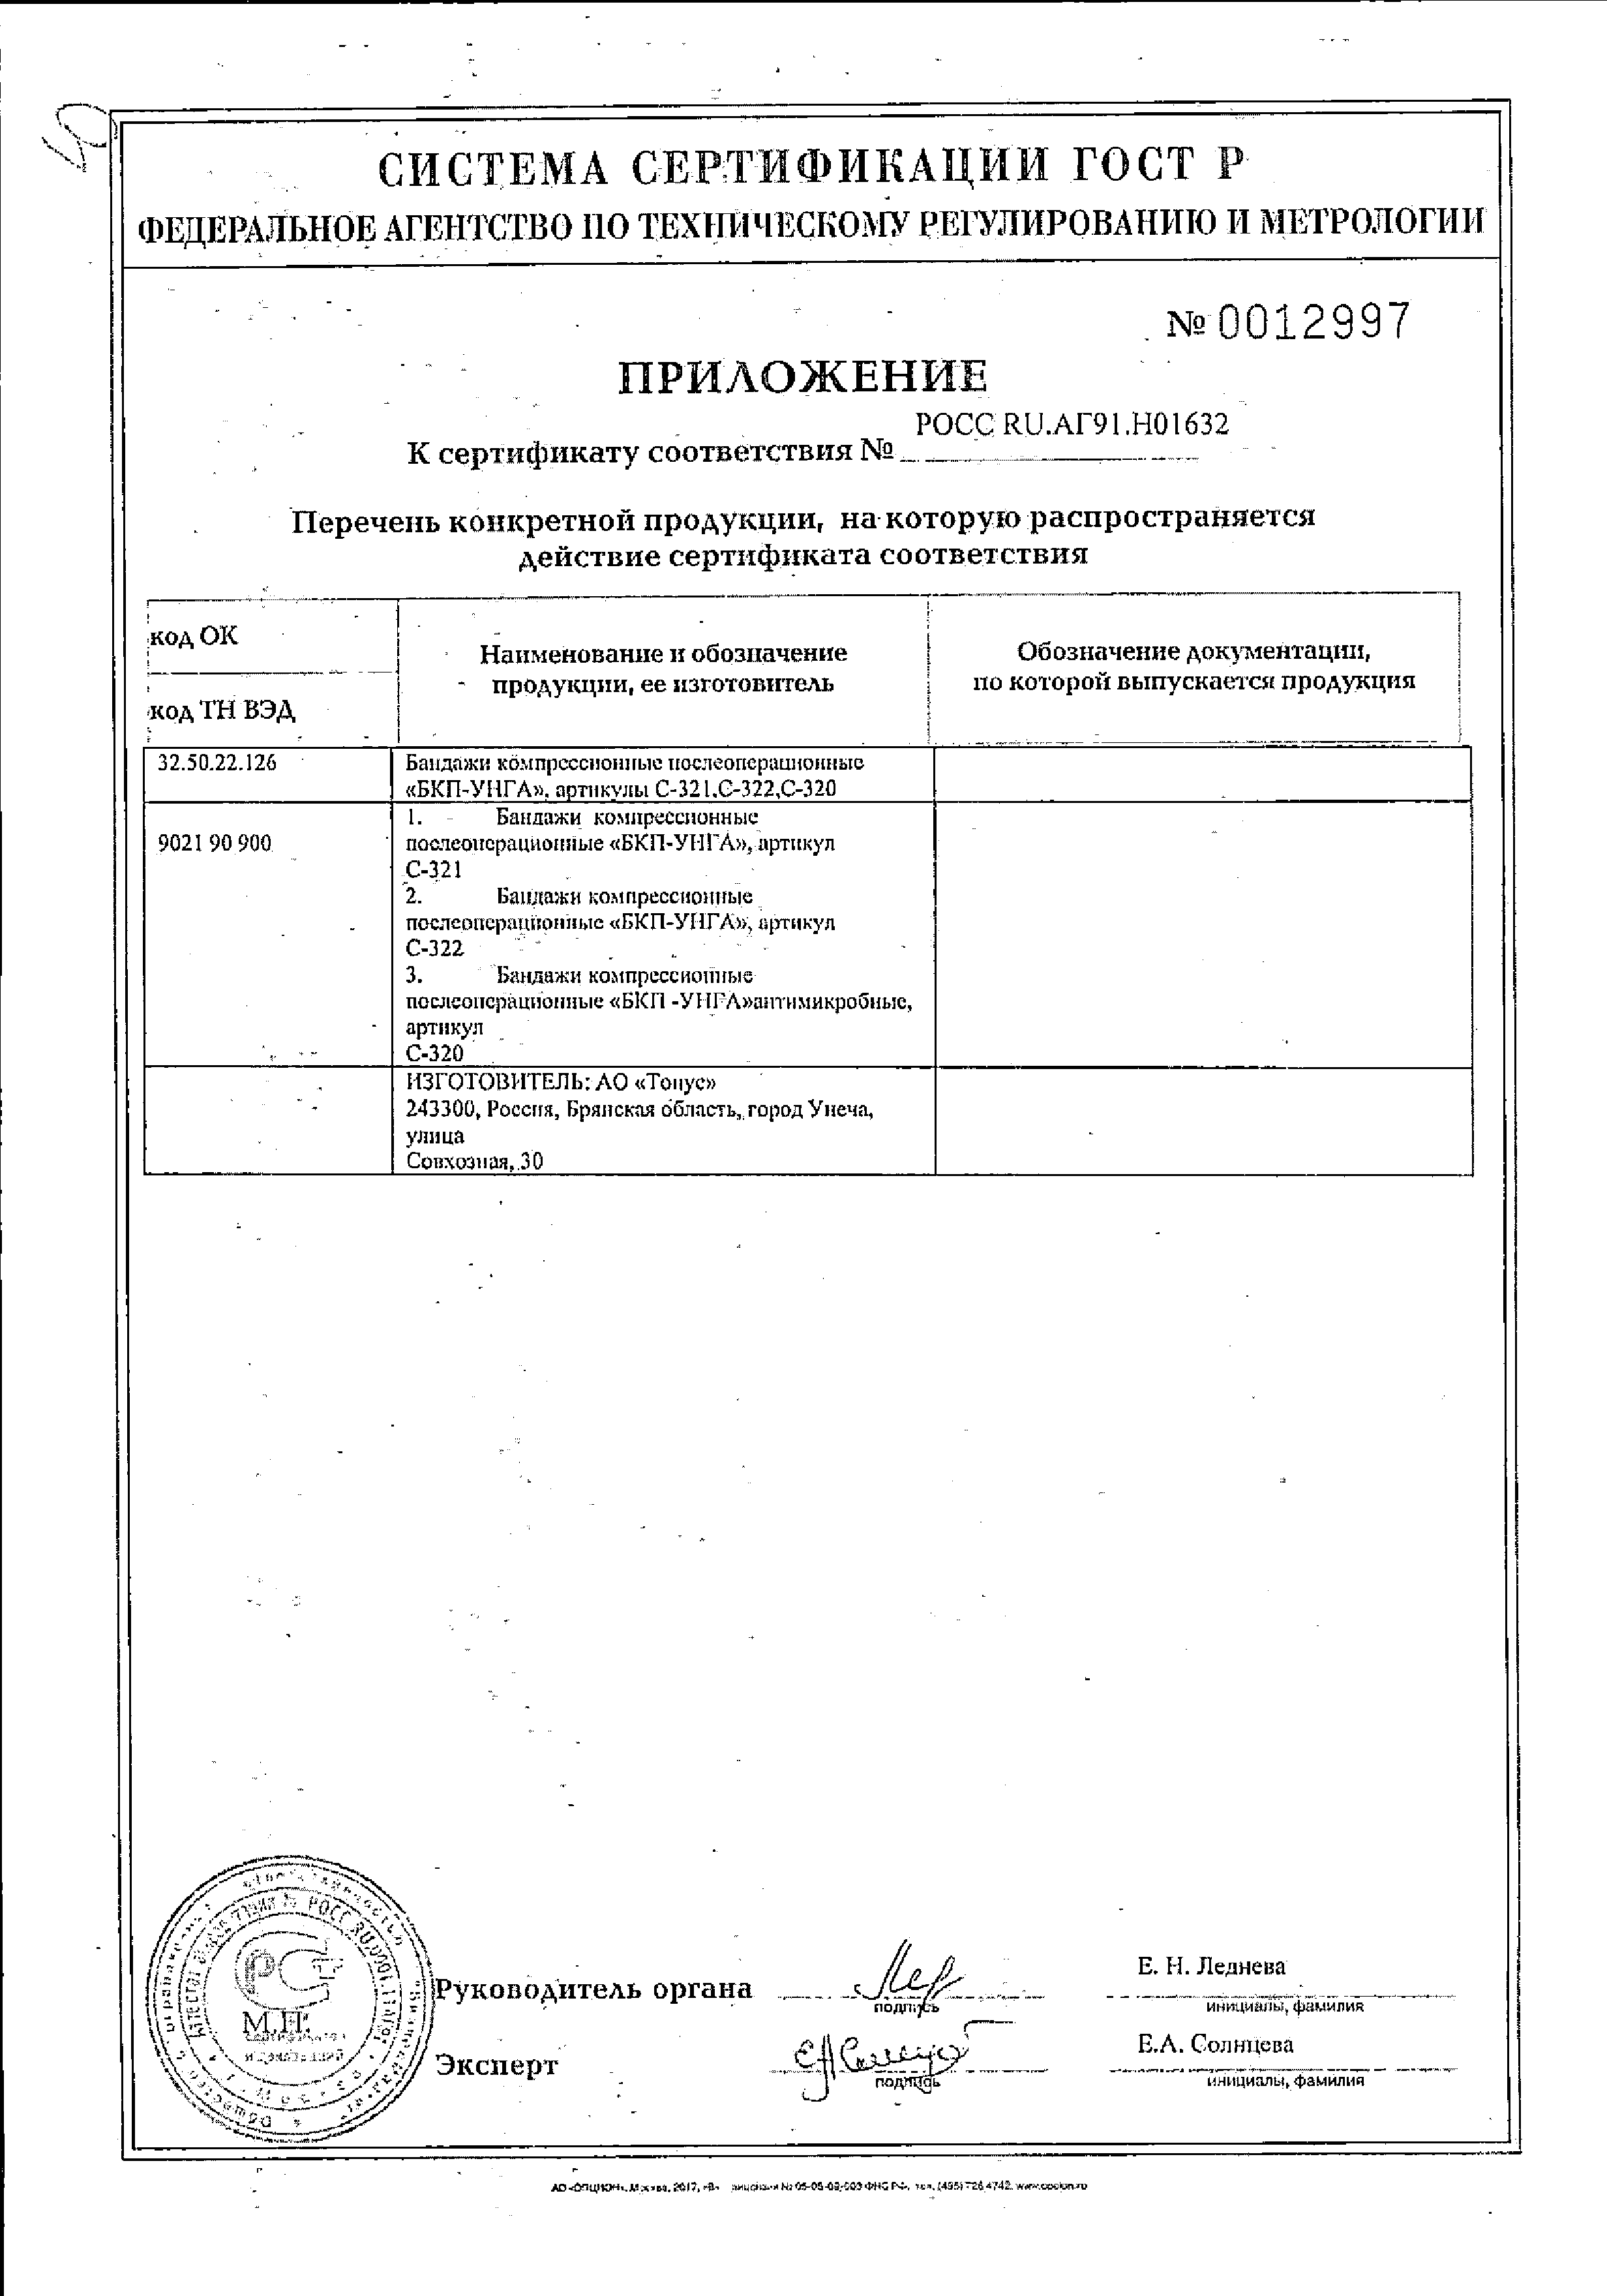 Бандаж послеоперационный Унга Супер (С321) сертификат